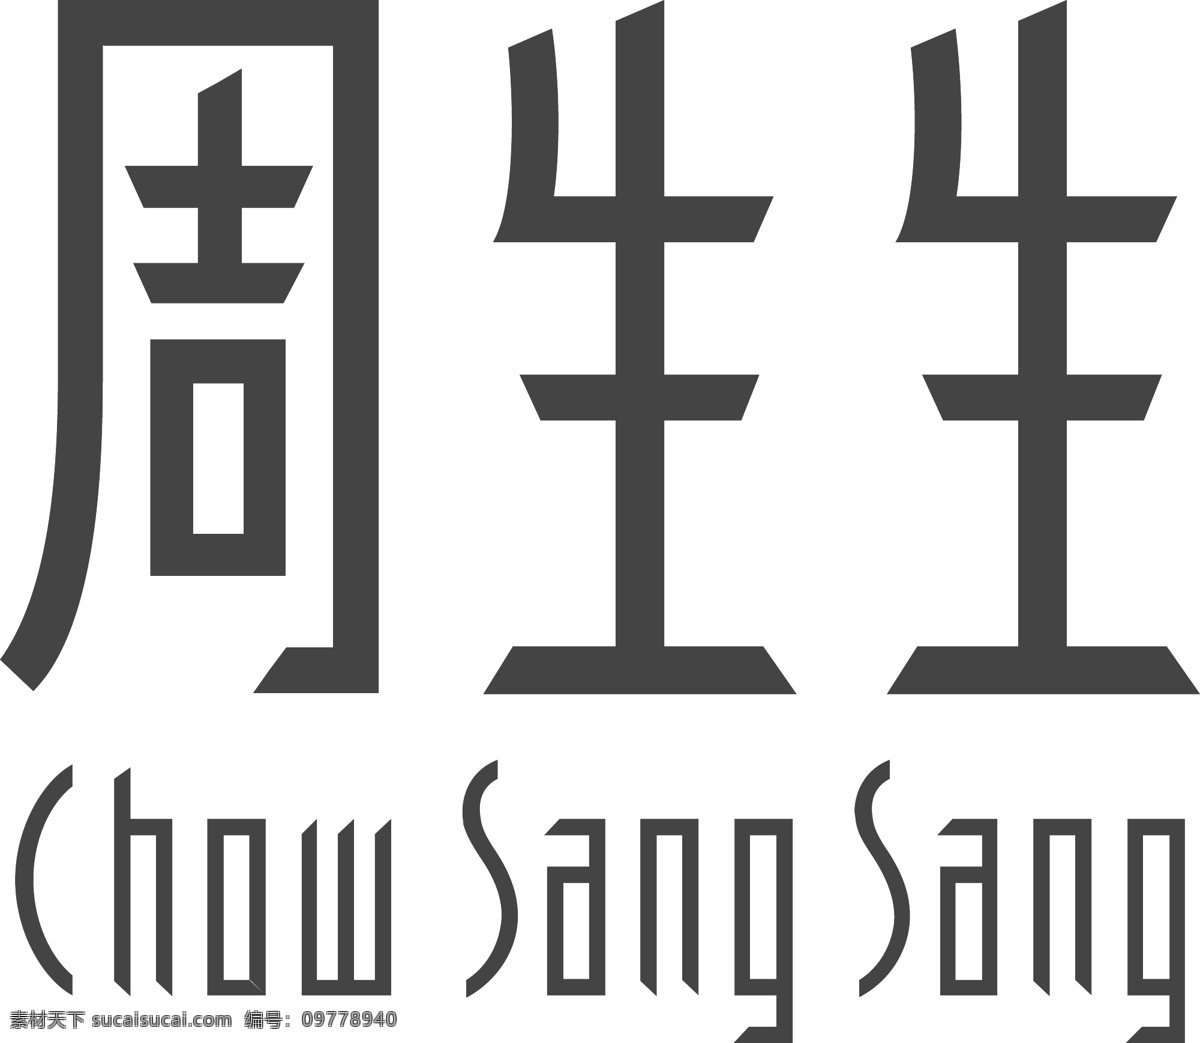 周生生珠宝 logo 周生生 珠宝 标志 标识 品牌 hk hongkong 企业商标 标志图标 公共标识标志